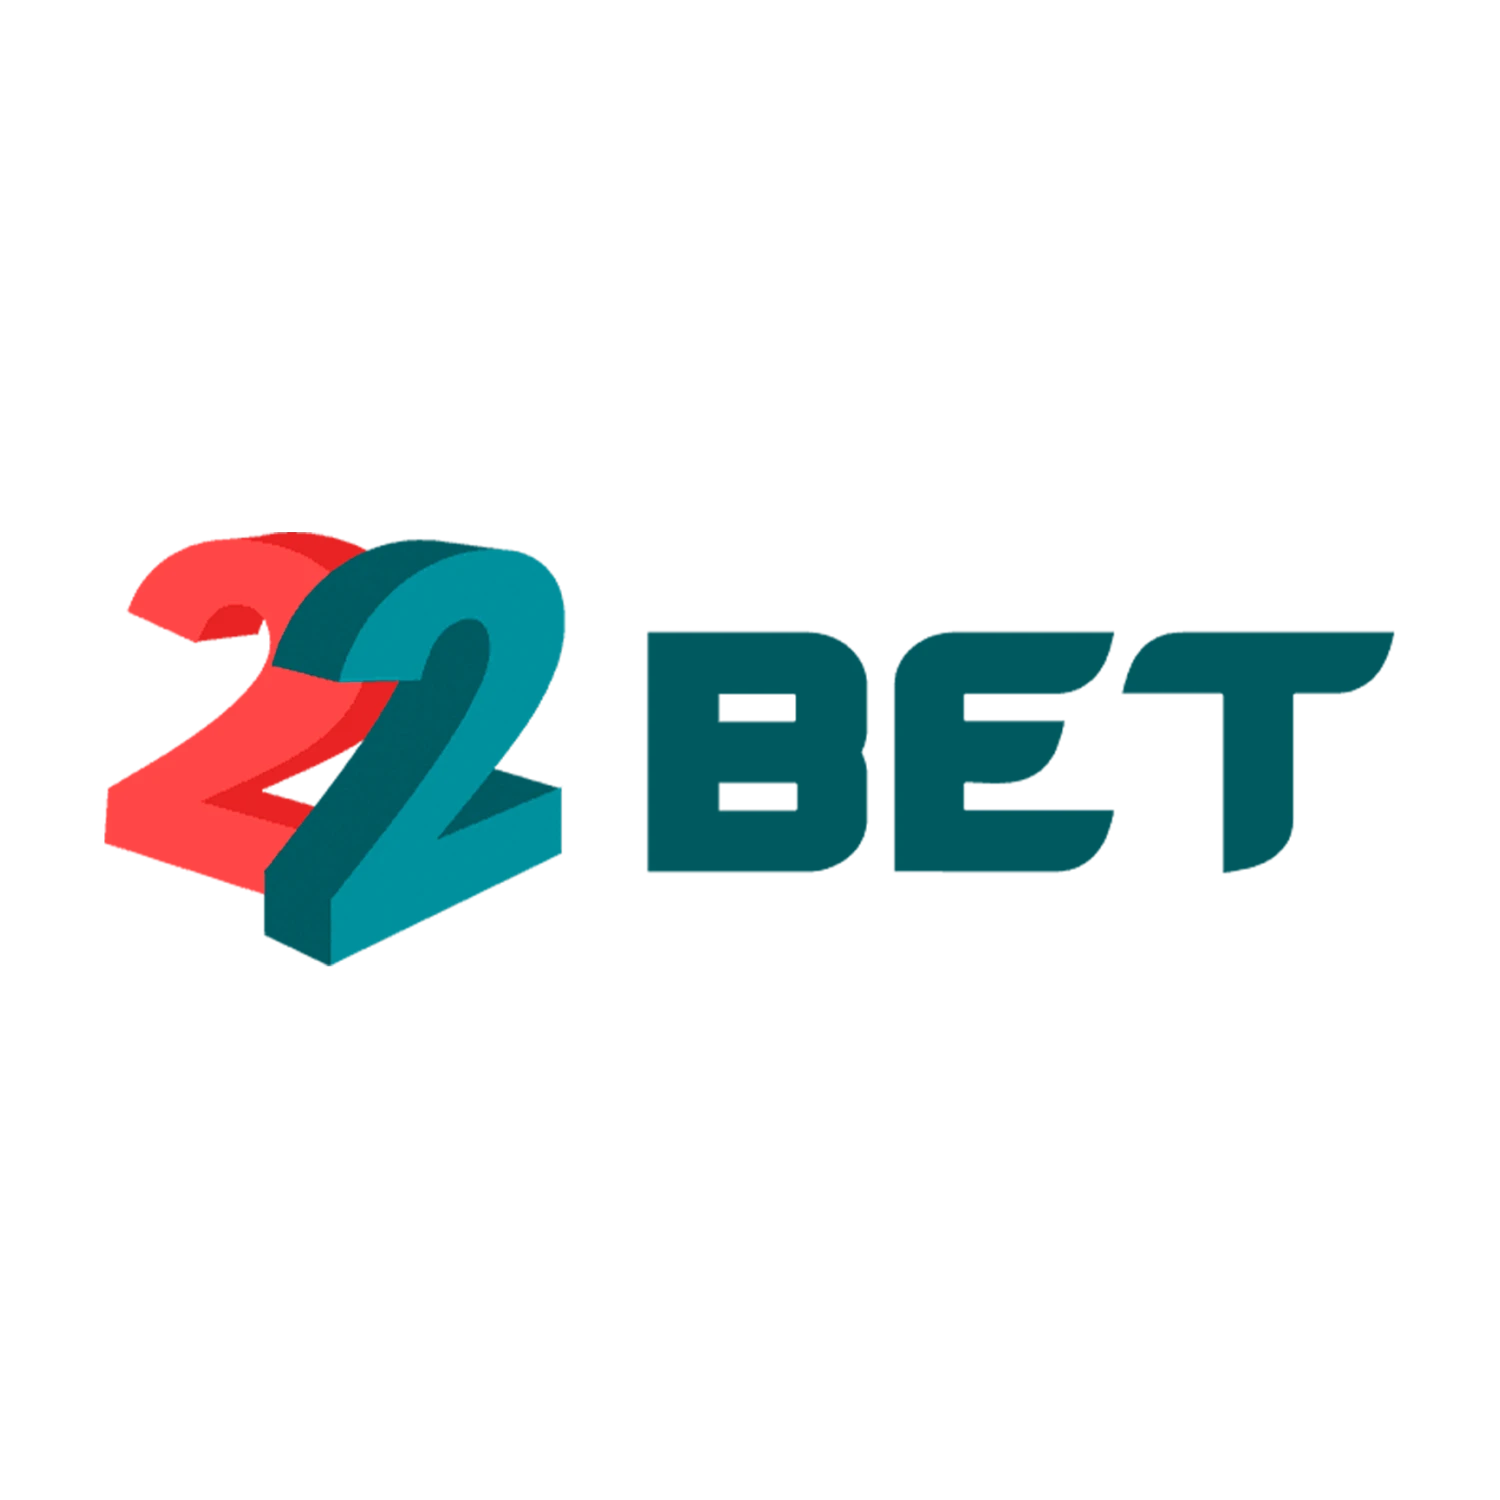 22Bet казино – информация о площадке